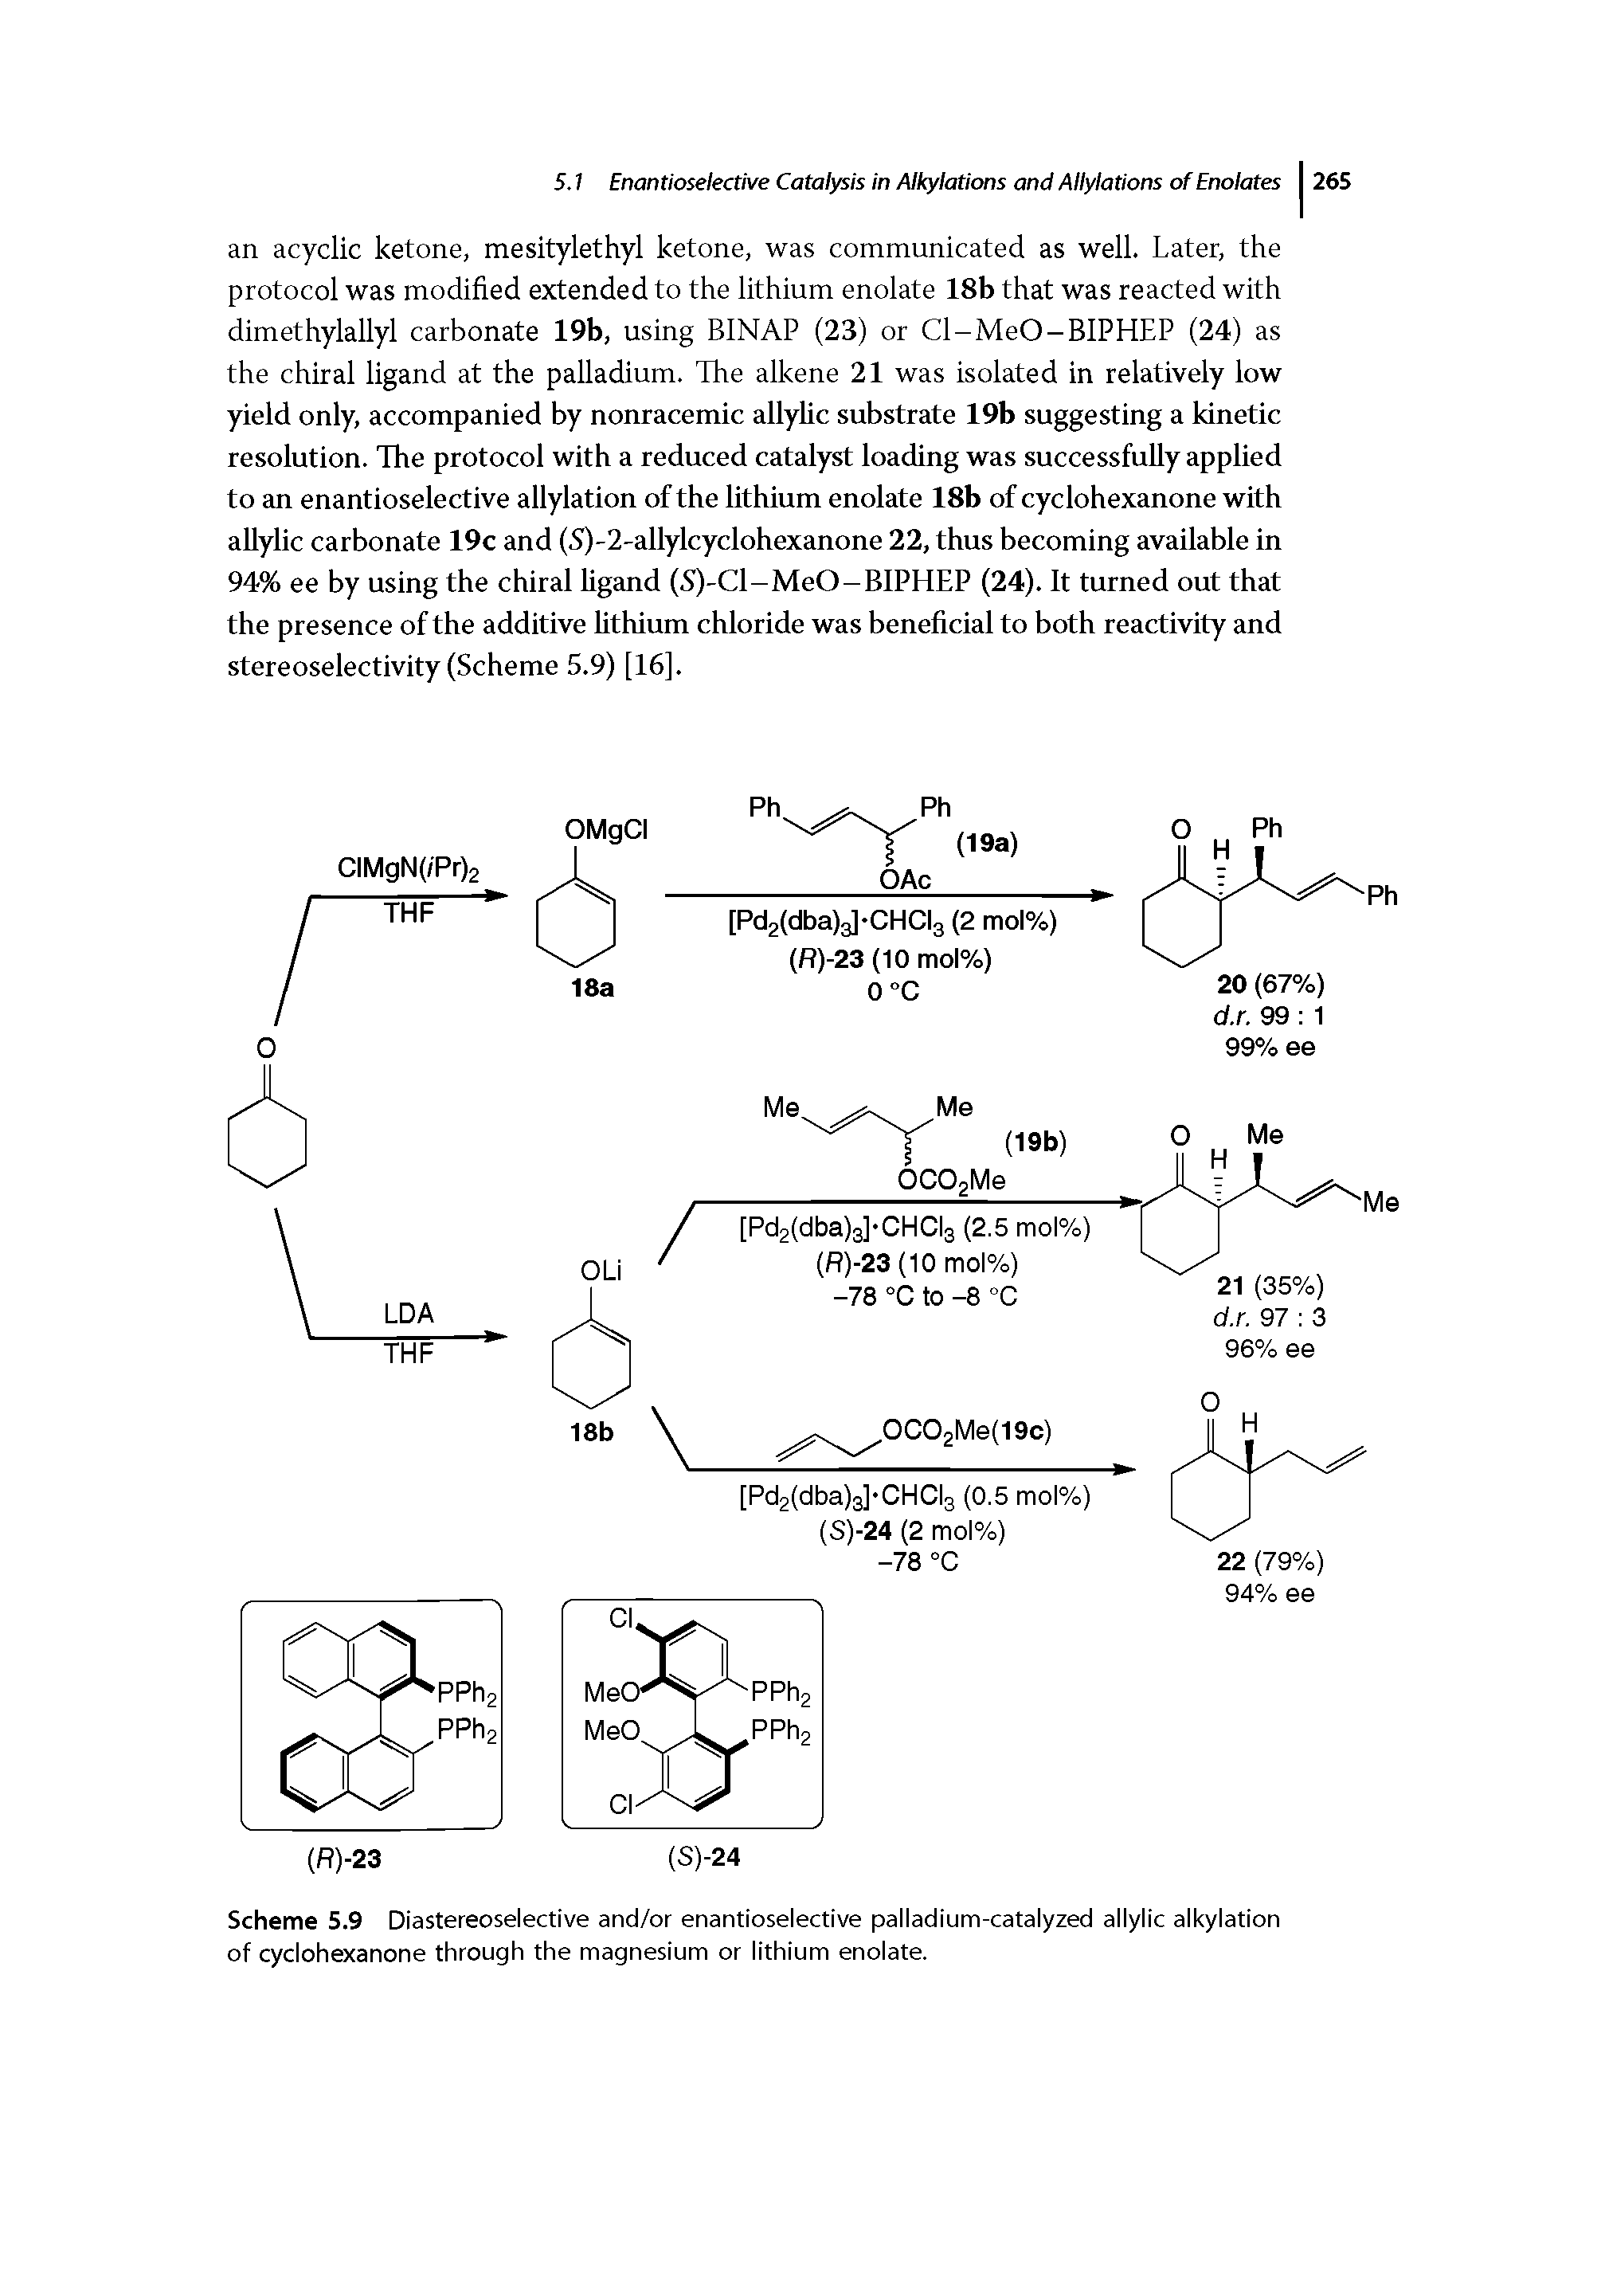 Scheme 5.9 Diastereoselective and/or enantioselective palladium-catalyzed allylic alkylation of cyclohexanone through the magnesium or lithium enolate.